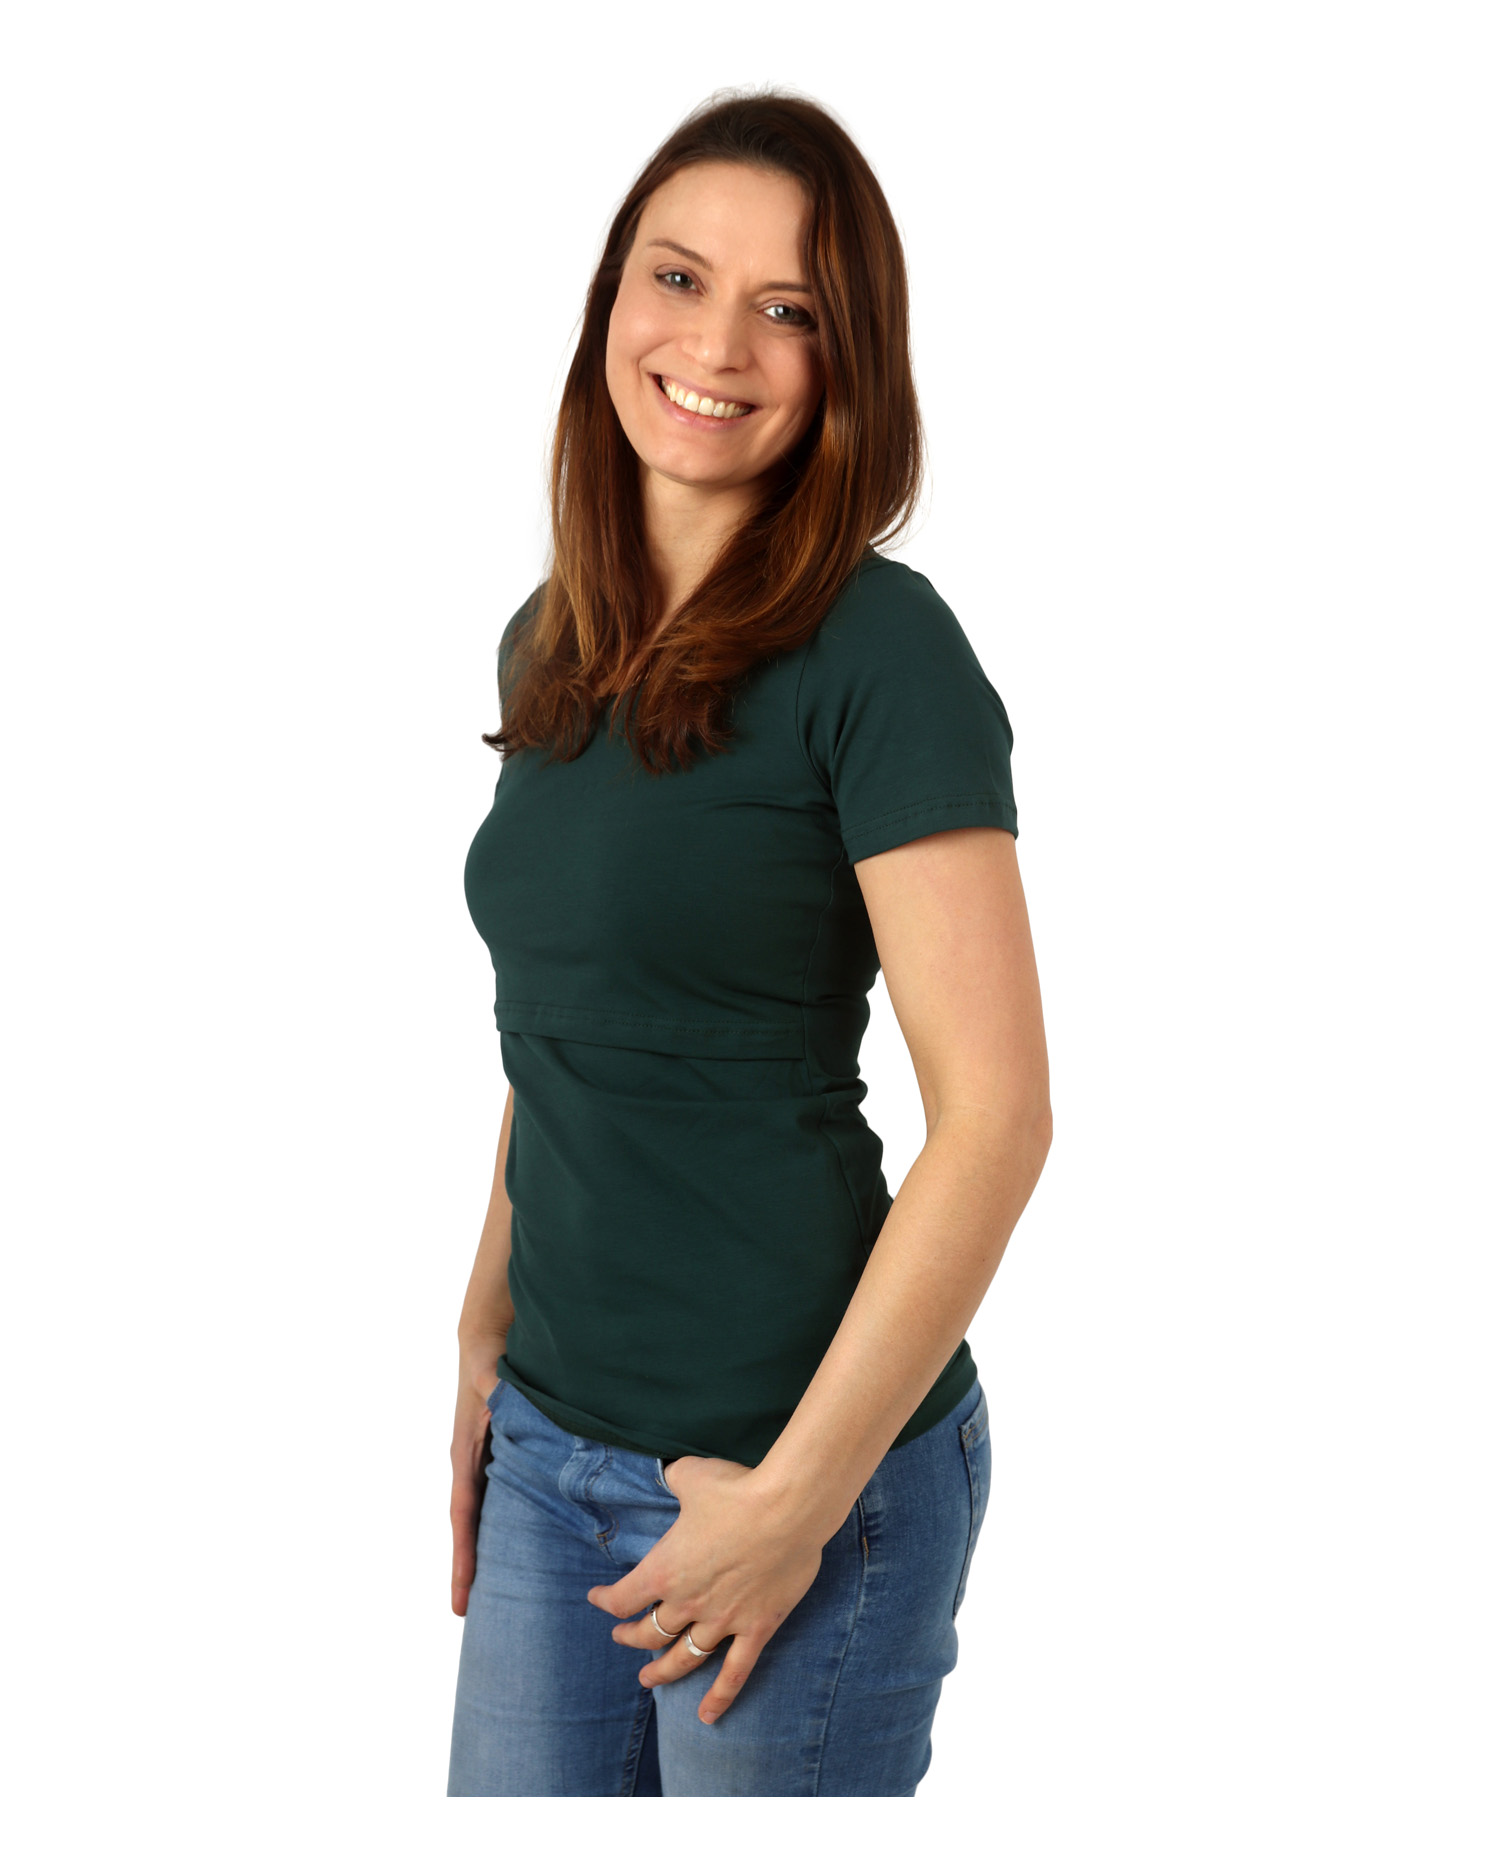 Breast-feeding T-shirt Katerina, short sleeves, dark green